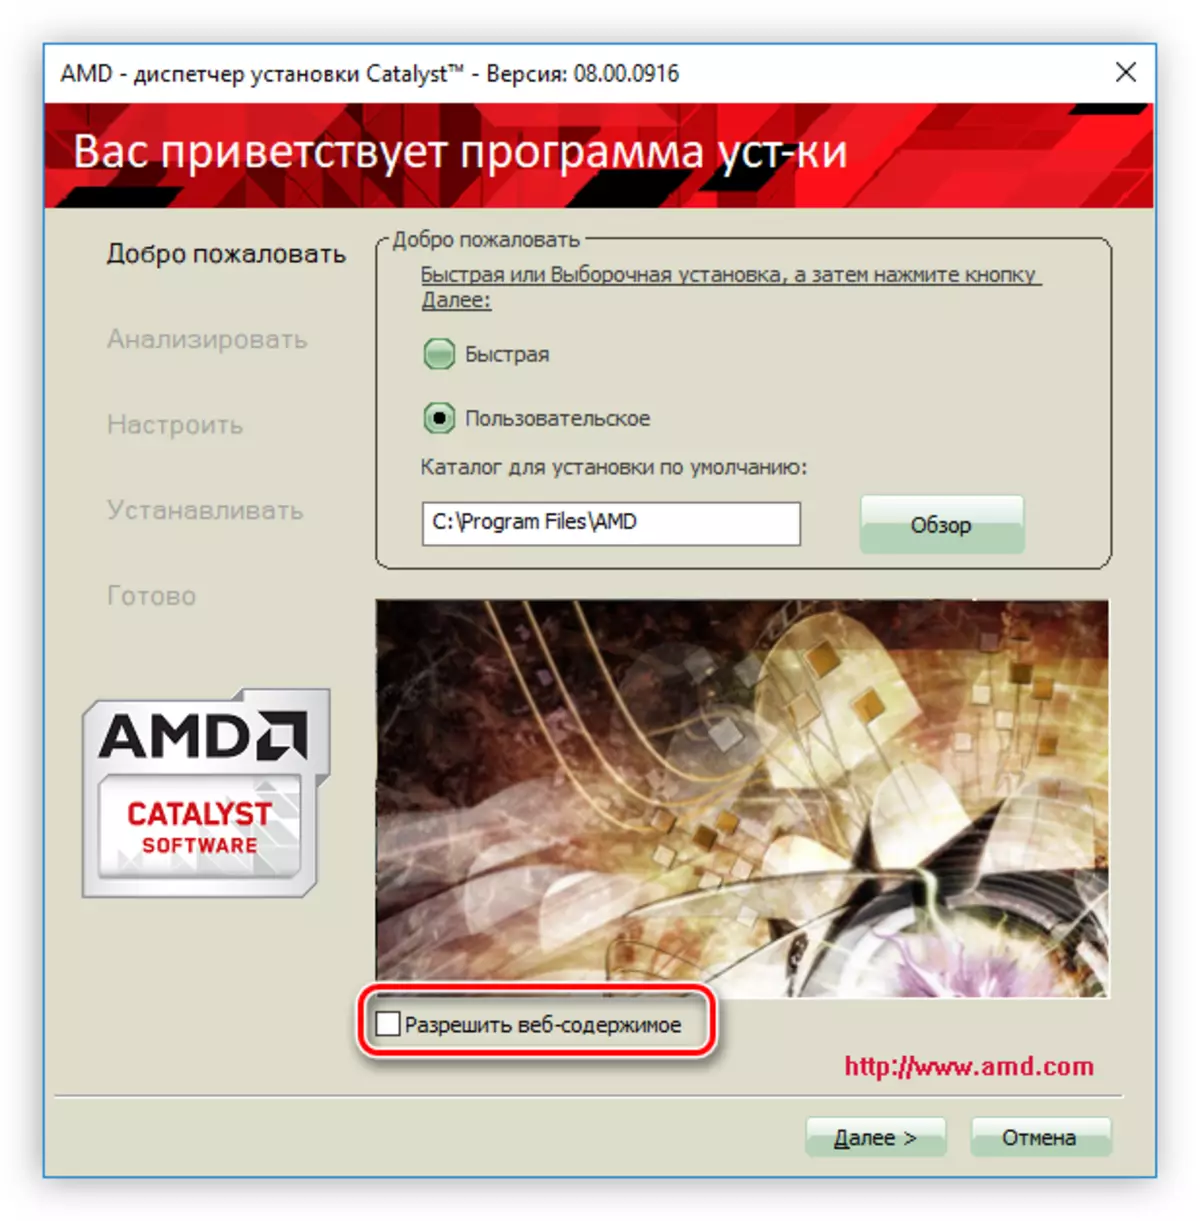 เห็บเพื่อปิดการใช้งานแบนเนอร์โฆษณาในช่วงเวลาของการติดตั้งไดรเวอร์สำหรับการ์ดแสดงผล AMD Radeon HD 7640G